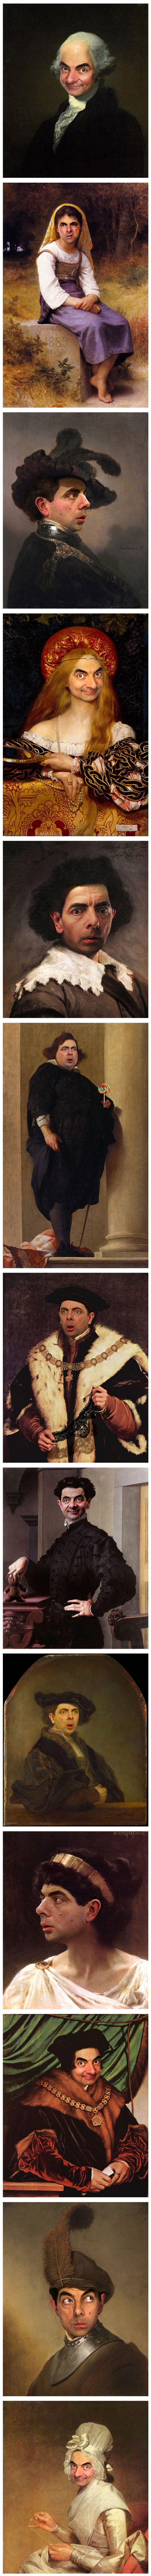 Rowan Atkinson en retratos clásicos